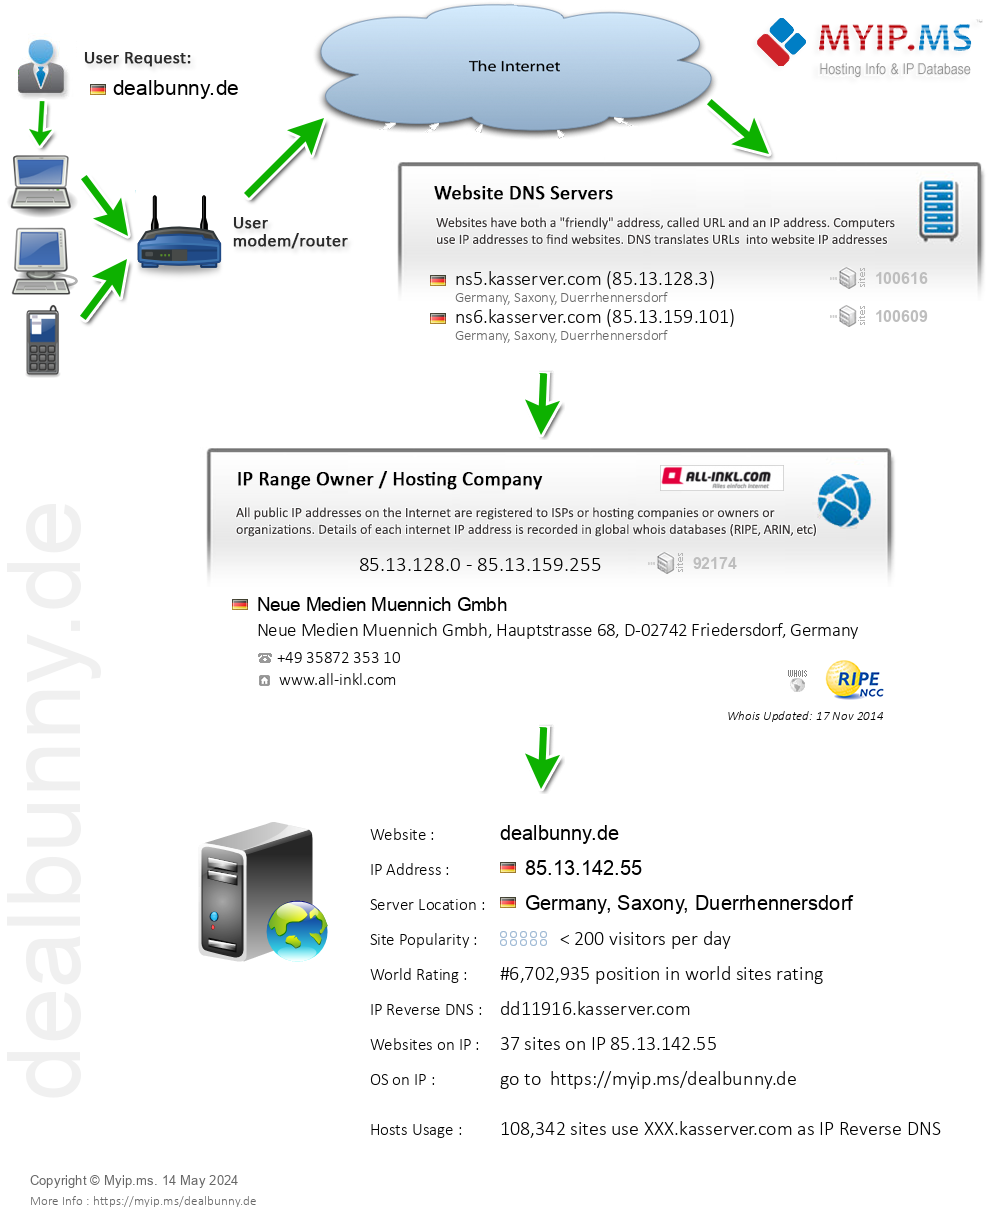 Dealbunny.de - Website Hosting Visual IP Diagram